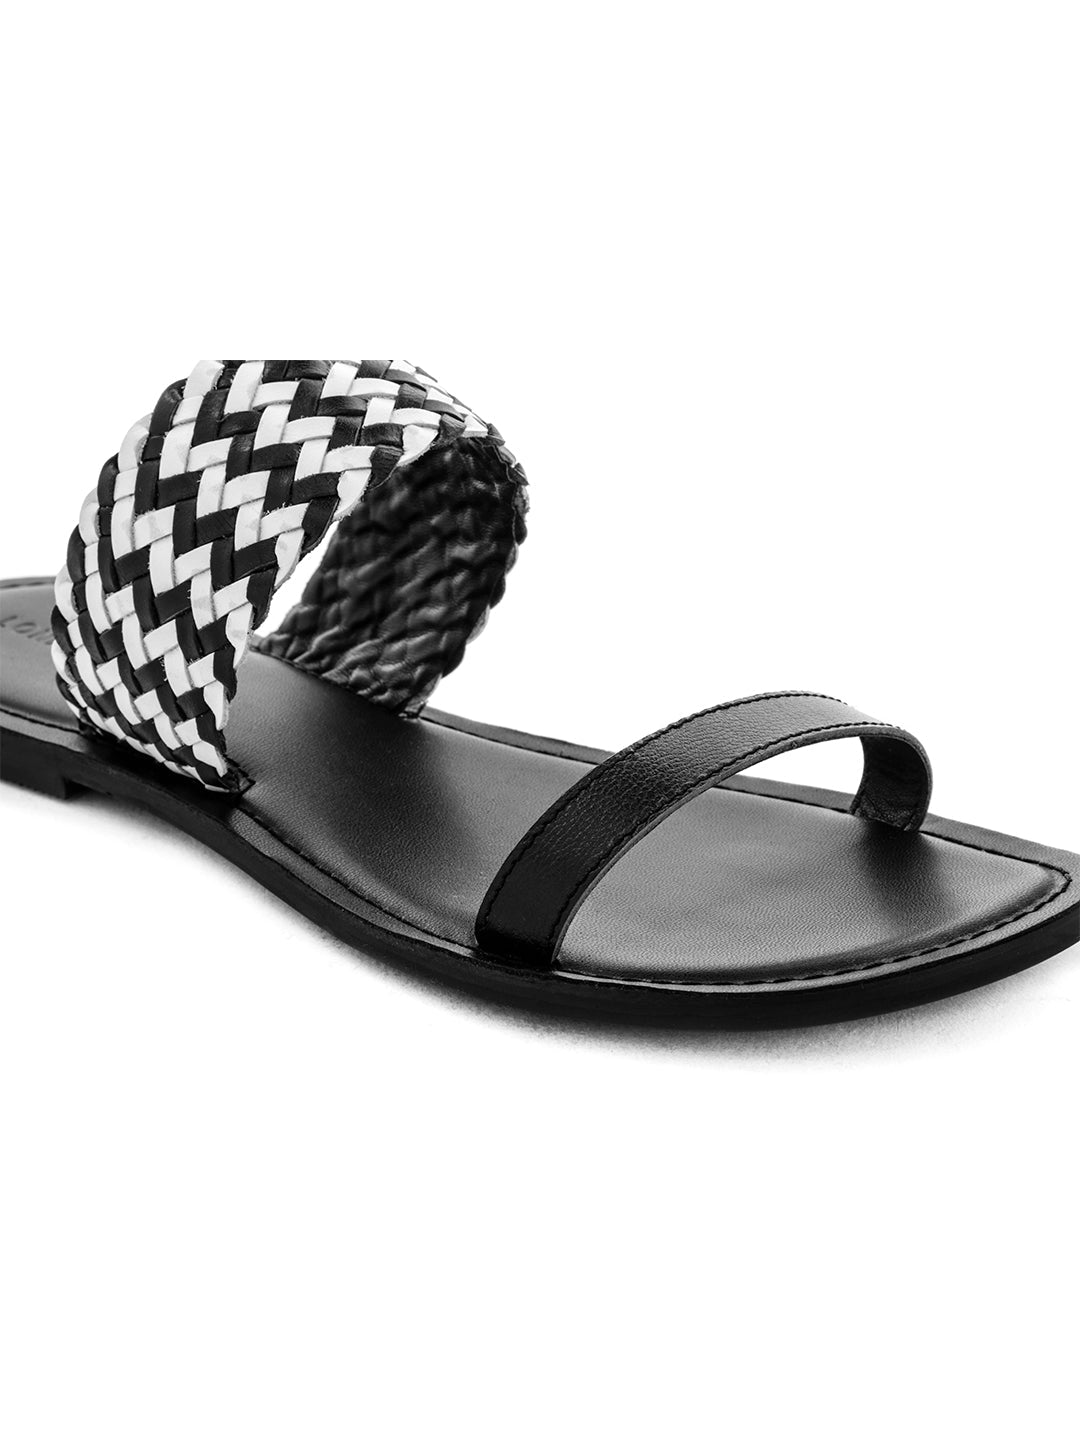 Black White Weaved Strap Sandal - Black